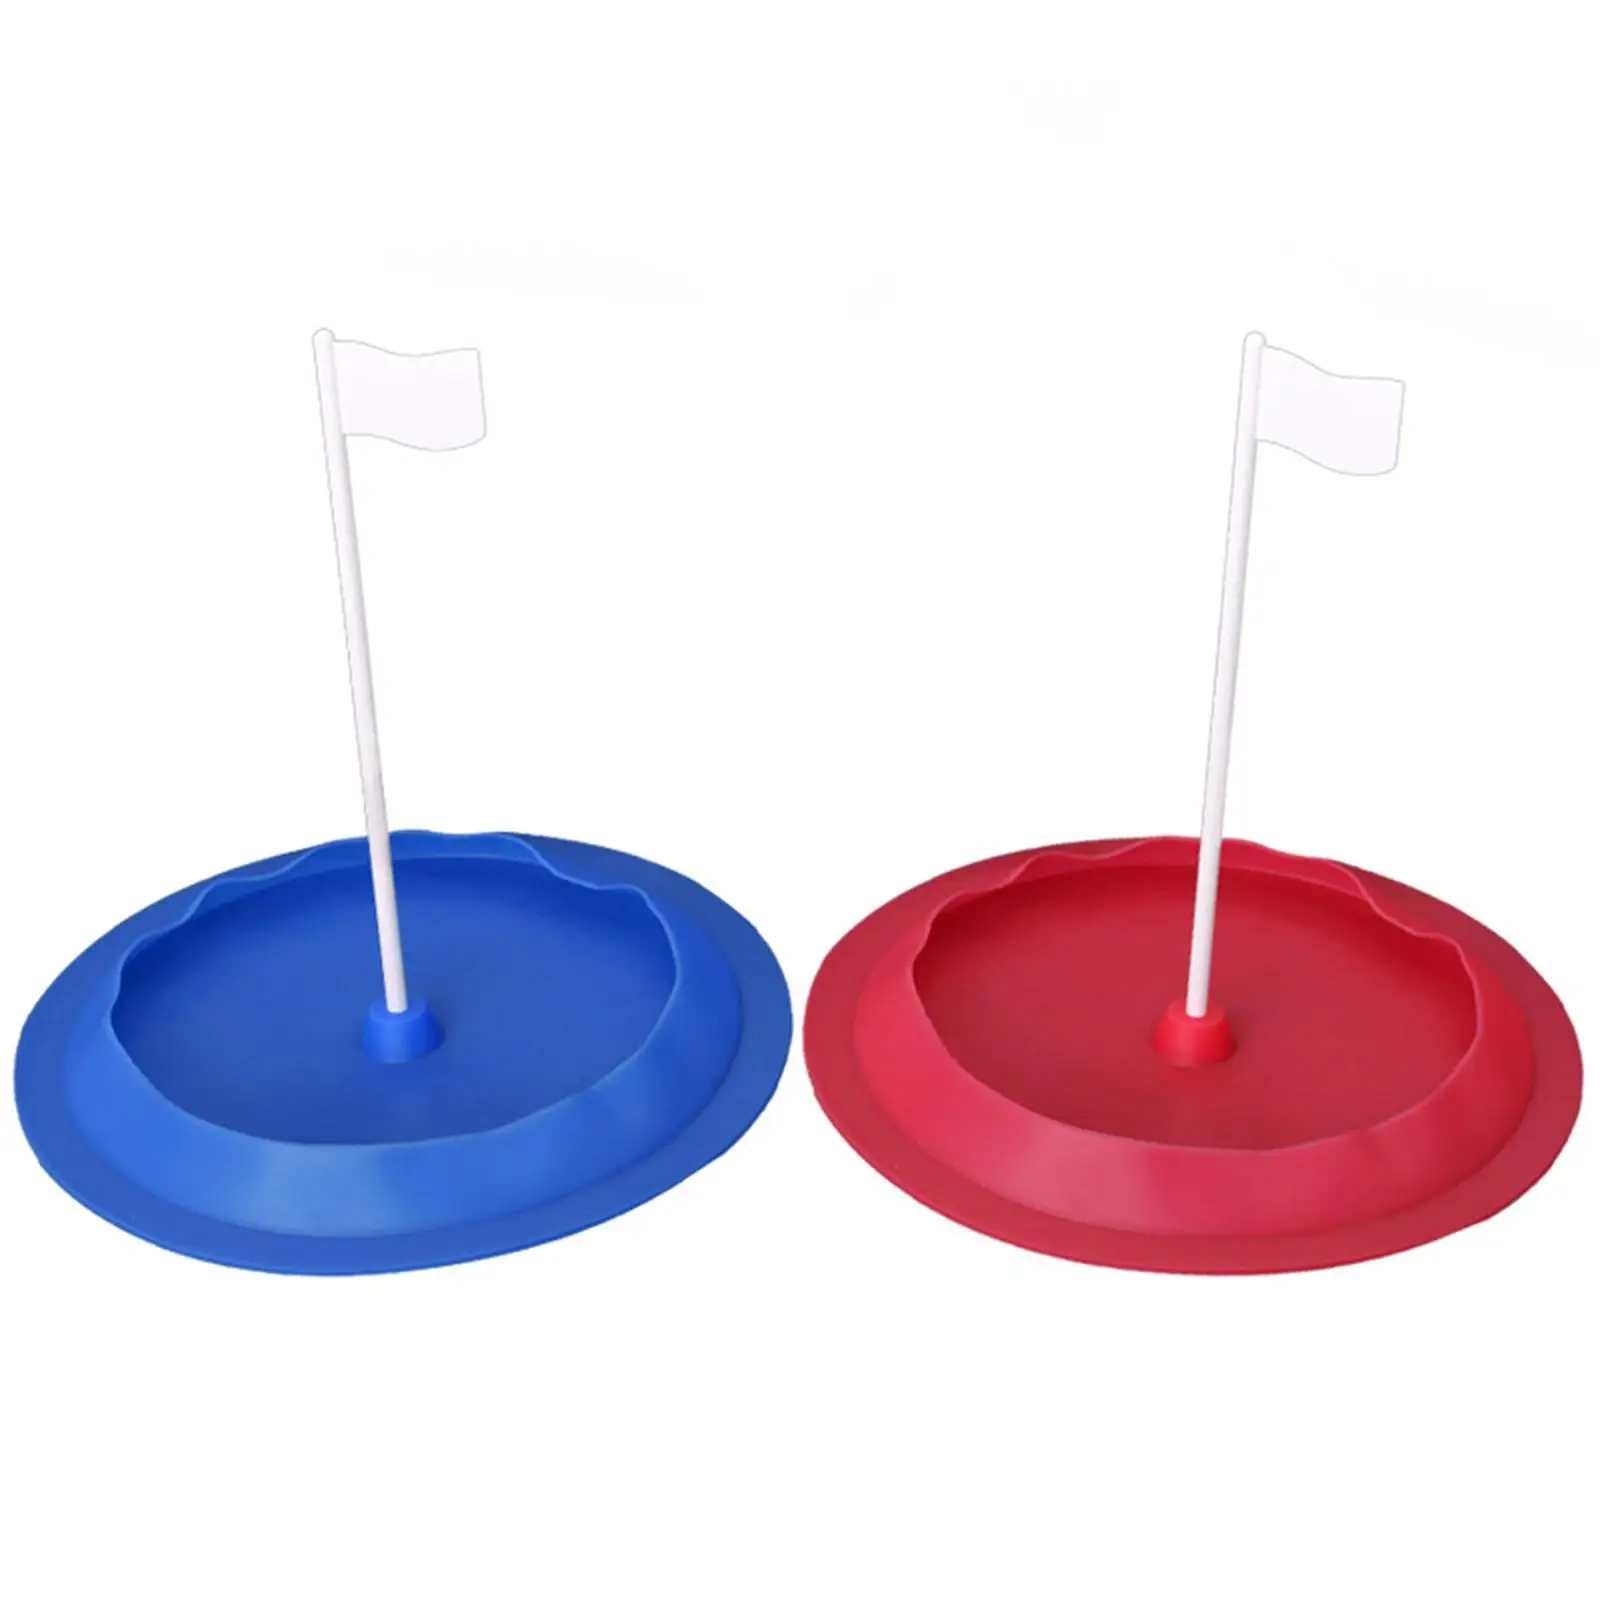 

Стакан для гольфа для женщин и мужчин, прочный с флагом, гибкий стакан с отверстиями для игры в гольф